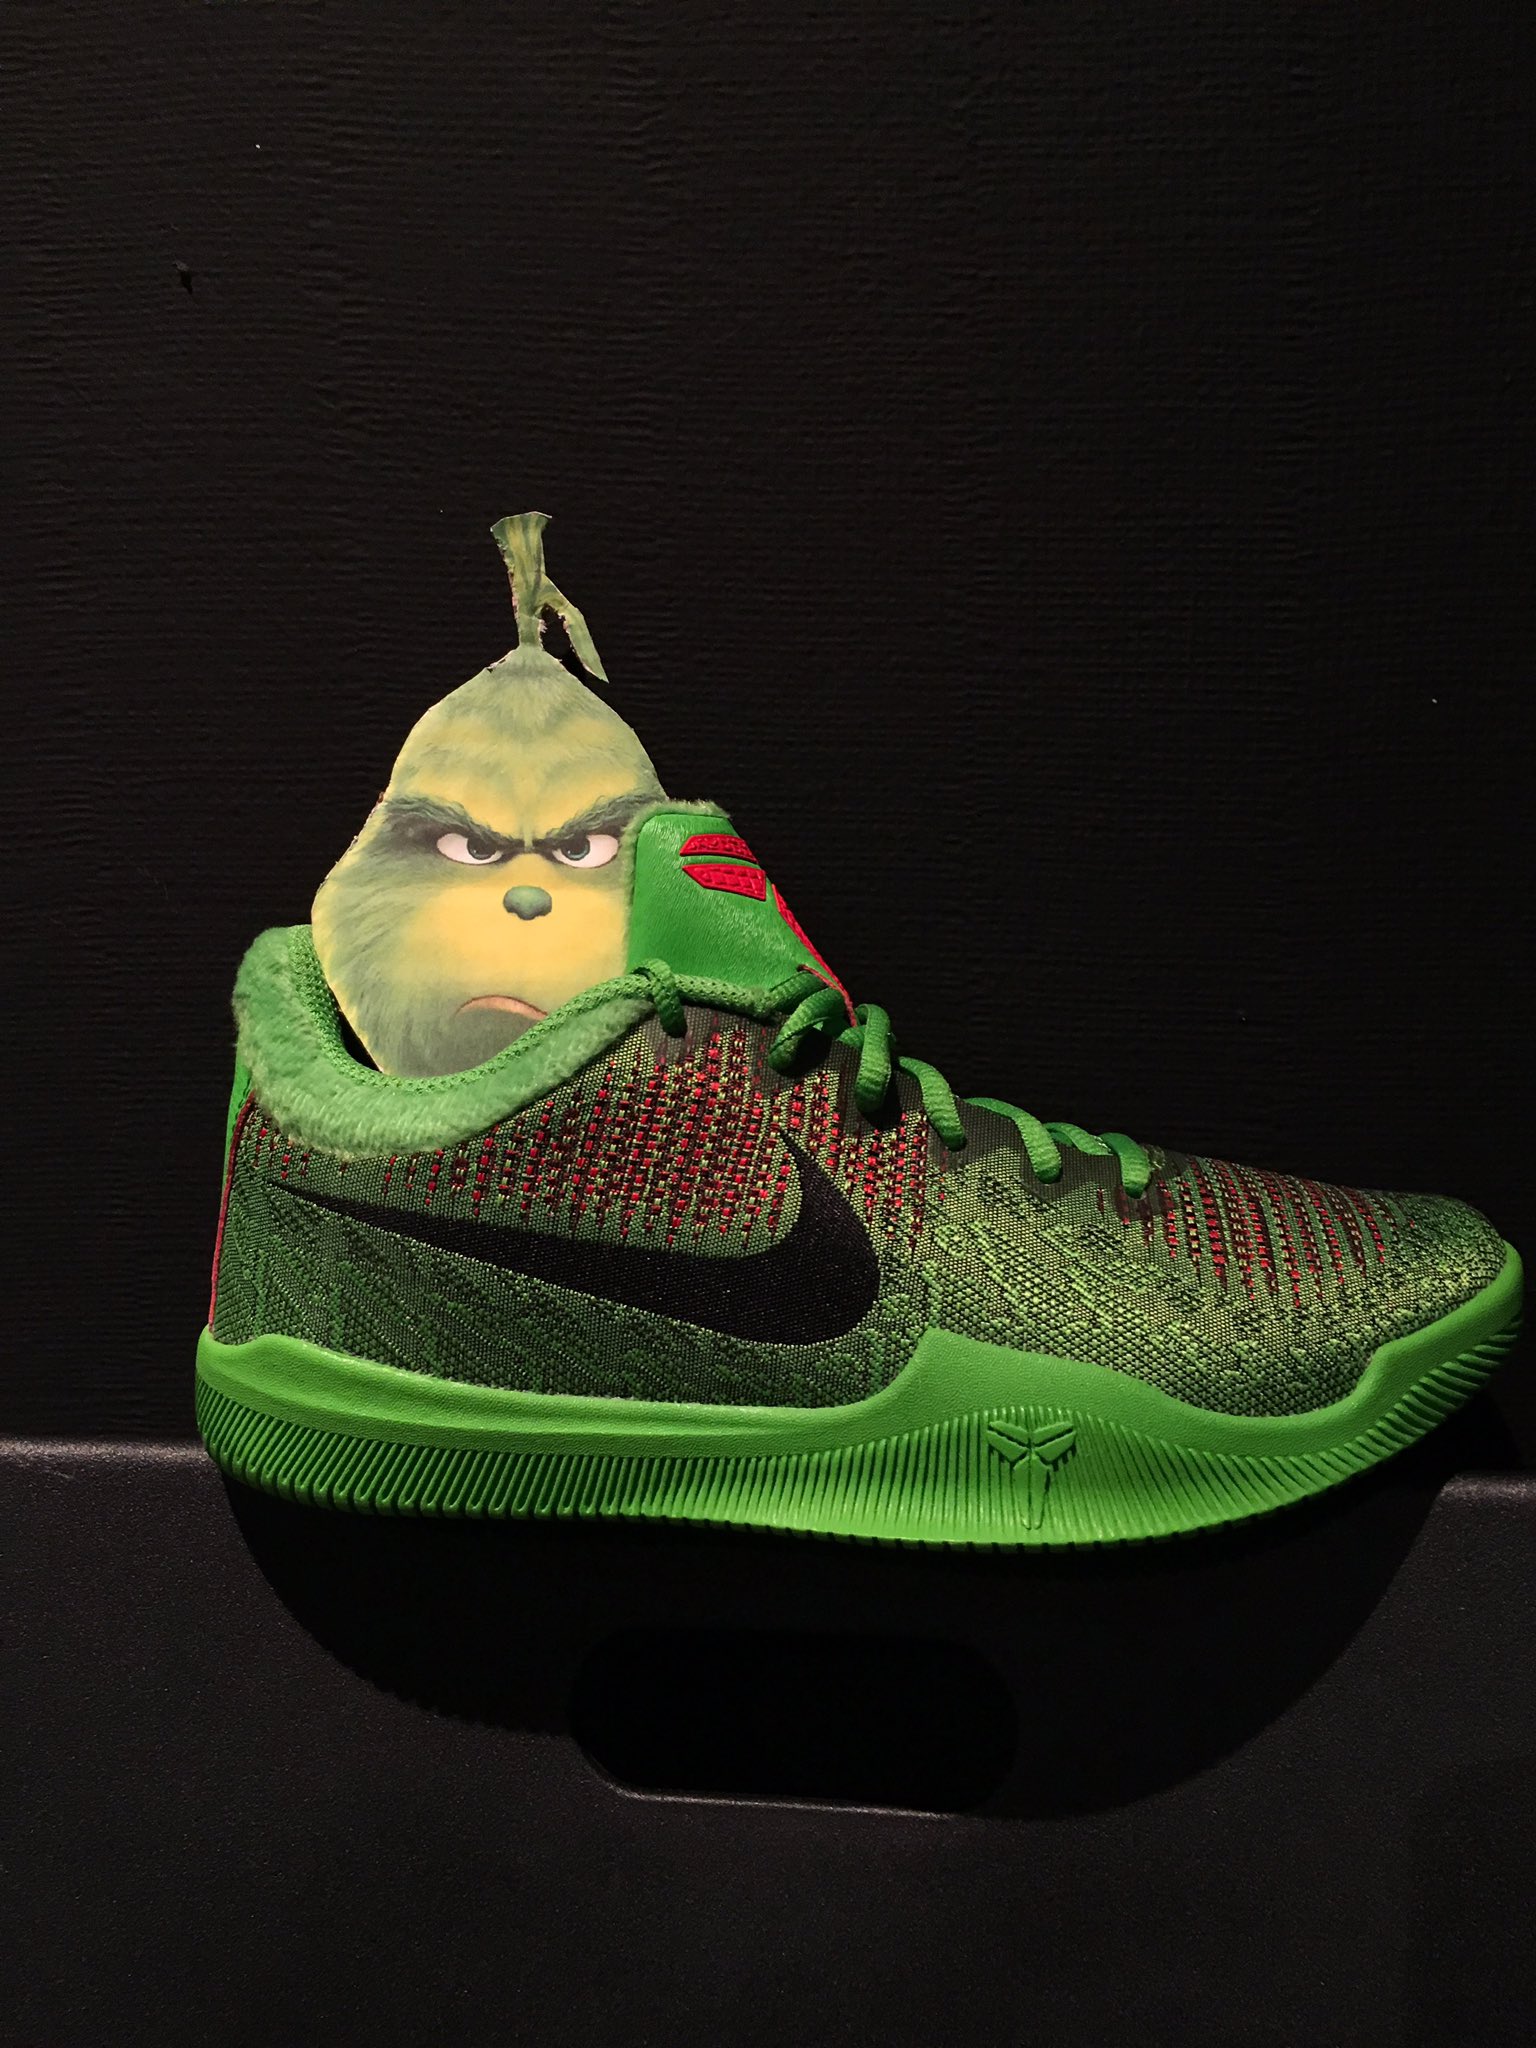 Impuro Alicia Electrónico Basket Country on Twitter: "Nike Kobe Mamba Rage “Grinch” ⠀⠀⠀⠀⠀⠀⠀⠀⠀  Disponible en tienda y web: https://t.co/98BvEjEIaA ⠀⠀⠀⠀⠀⠀⠀⠀⠀ #kobe #mamba  #grinch https://t.co/NLfz6r1joC" / Twitter